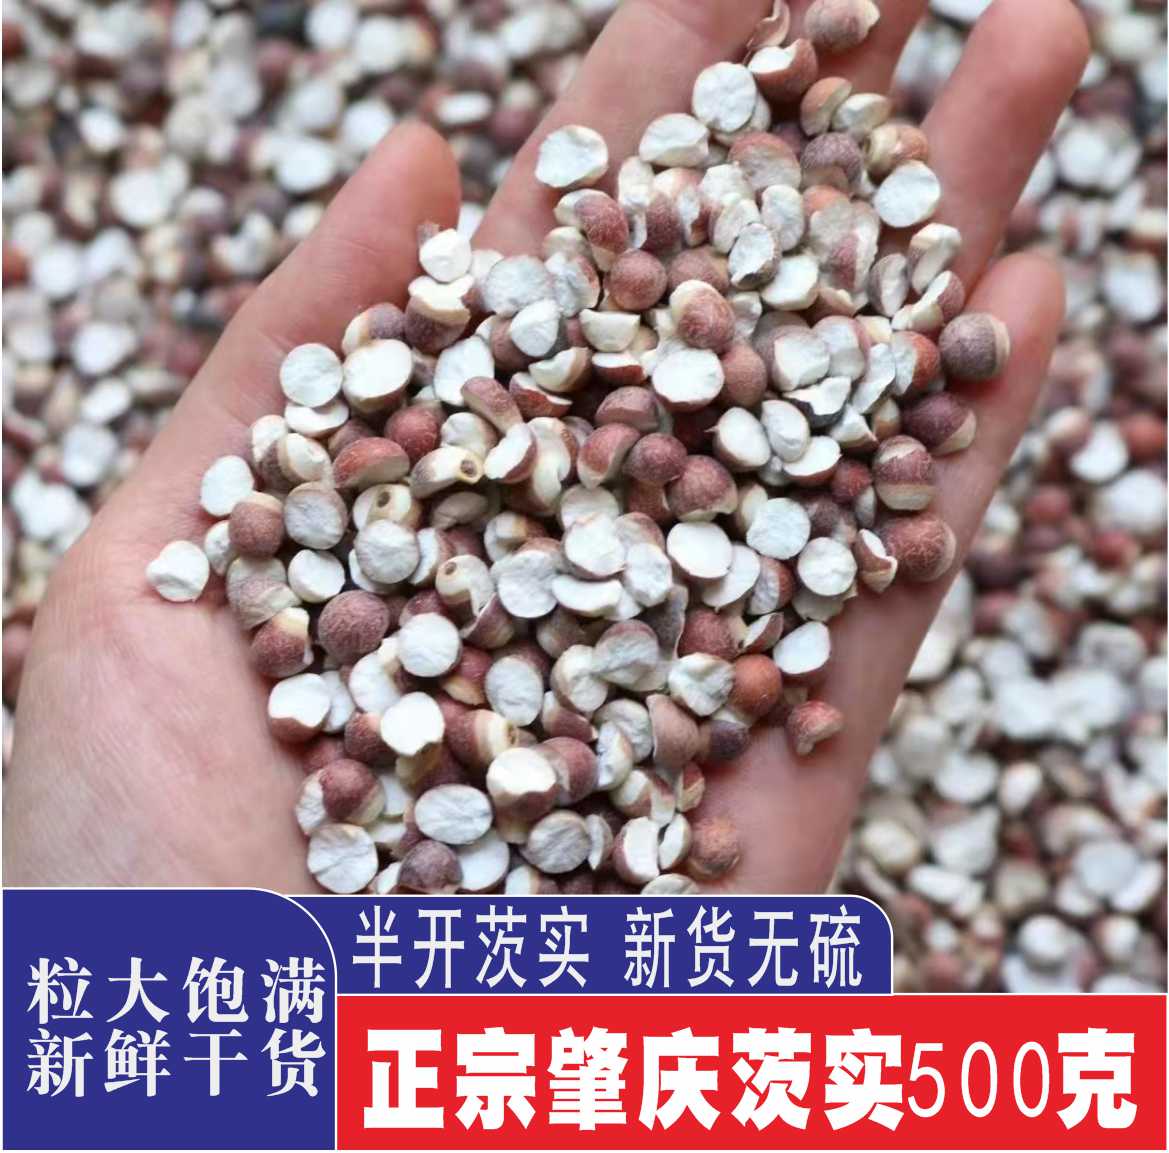 广东肇庆芡实500g半开干货农家自产新货茨实鸡头米另售赤小豆薏米